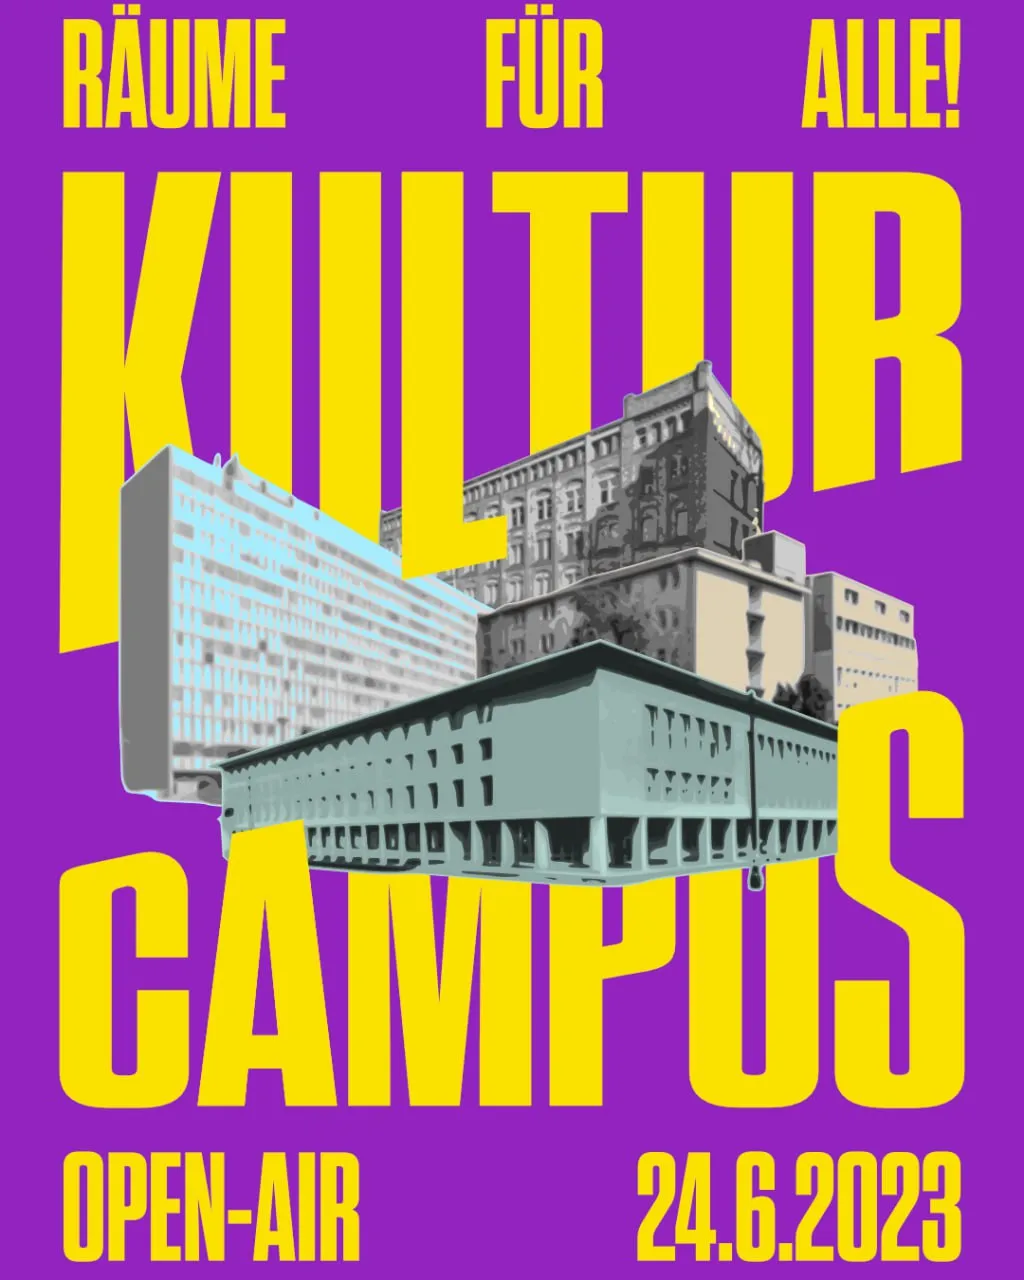 Plakat für das Kulturcampus Open-Air am 24.6.2023 unter dem Motto "Räume für alle!" das eine Collage verschiedener Campus-Gebäude zeigt, darunter das Juridicum, das Studierendenhaus und die ehemalige Akademie der Arbeit.